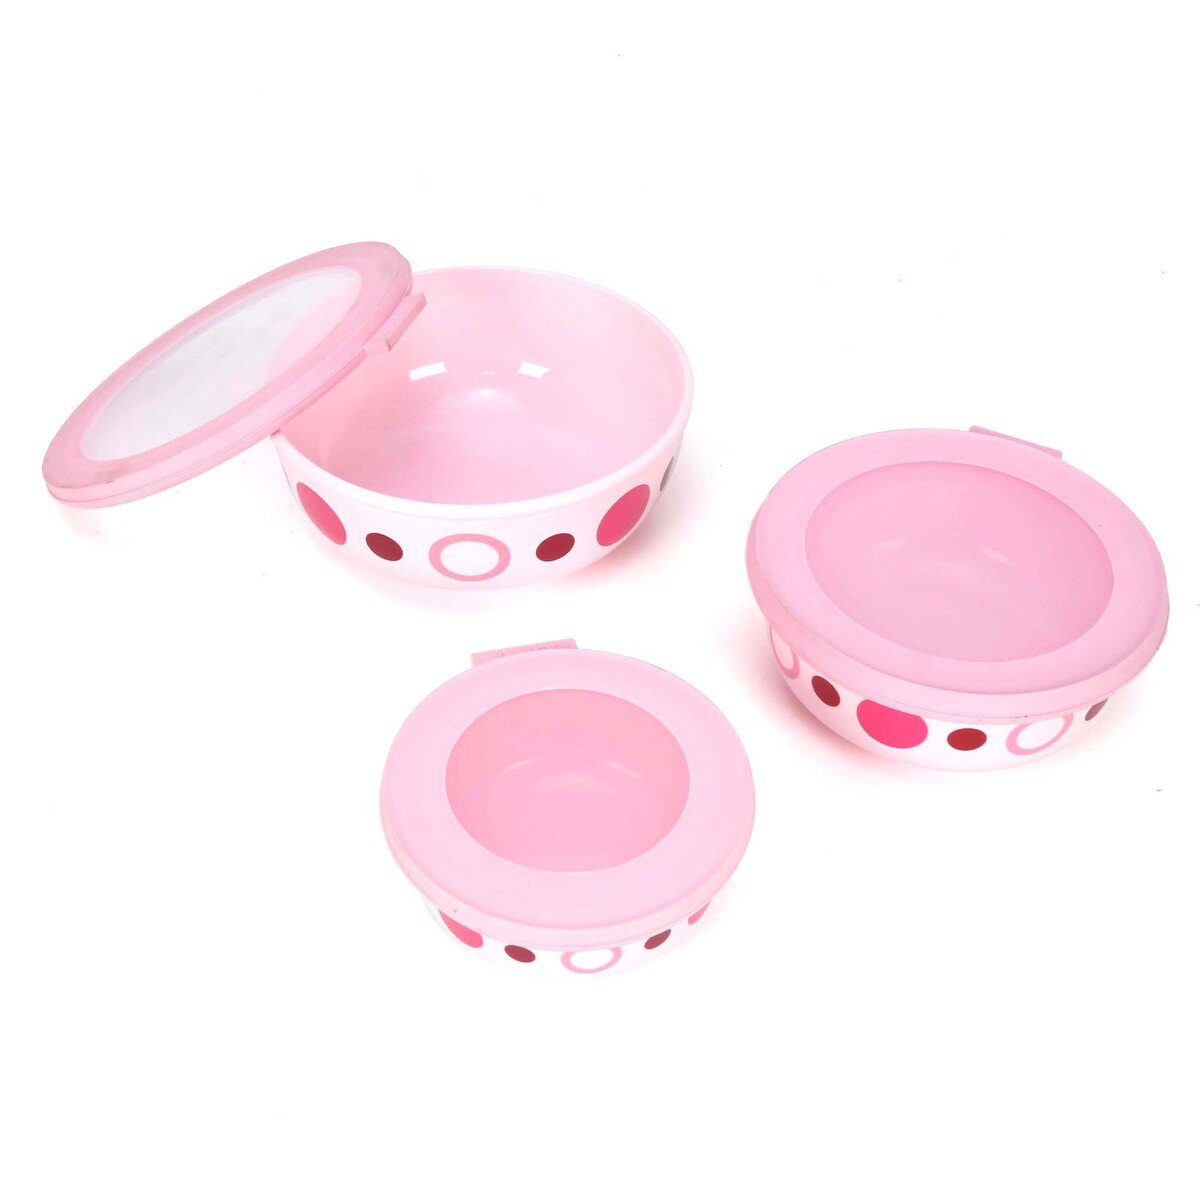 Joyful Plastic Container Ceramica 3pcs Set, Assorted Colors